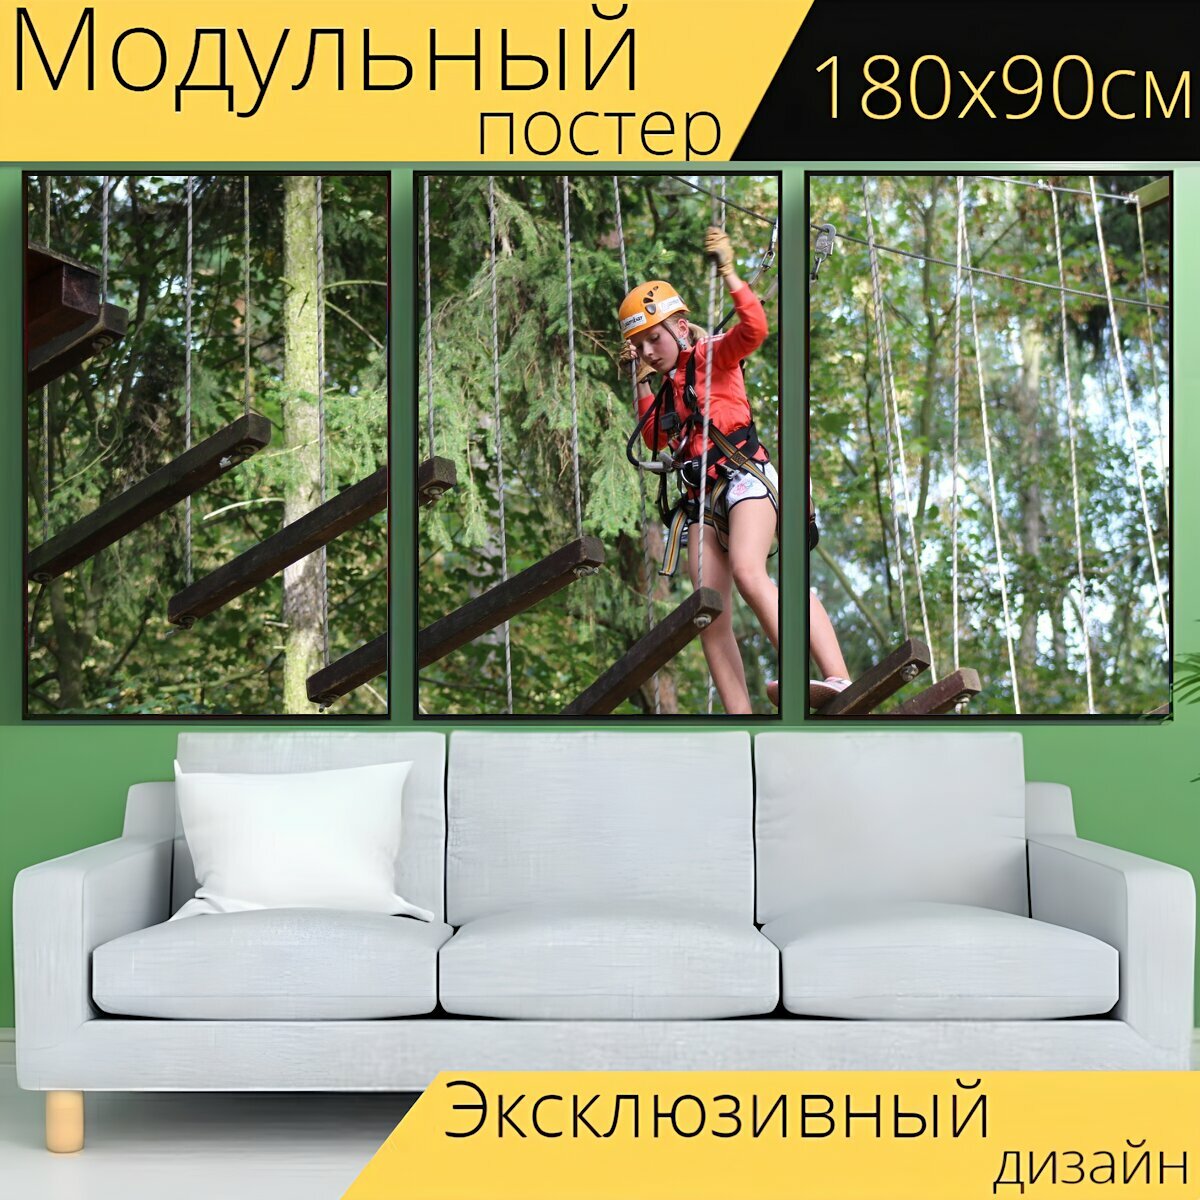 Модульный постер "Веревочный парк кладно движение" 180 x 90 см. для интерьера